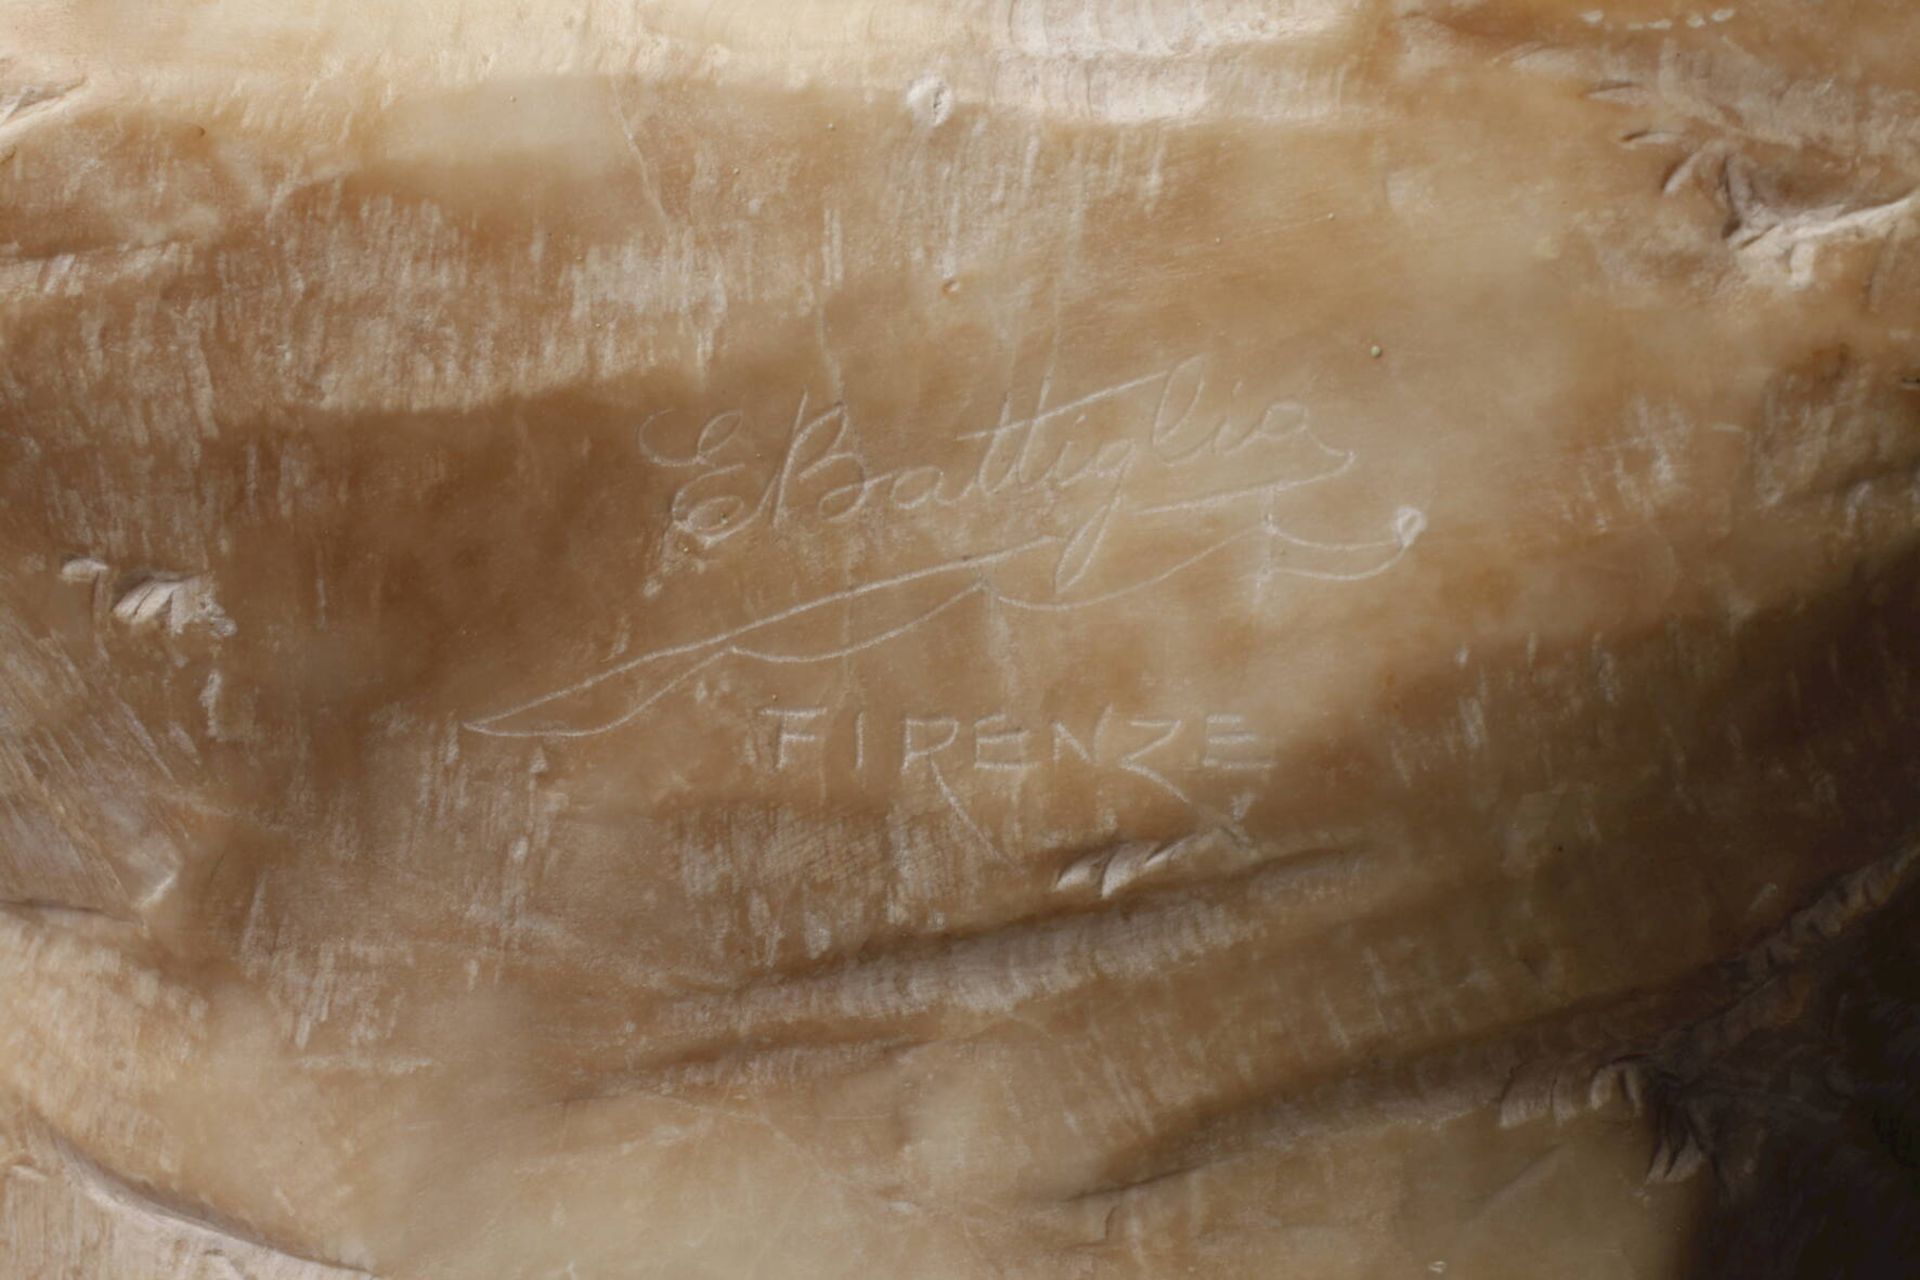 Eugenio Battiglia, Baigneuse Anfang 20. Jh., signiert "E. Battiglia Firenze", bezeichnet "Baigneuse" - Image 6 of 7